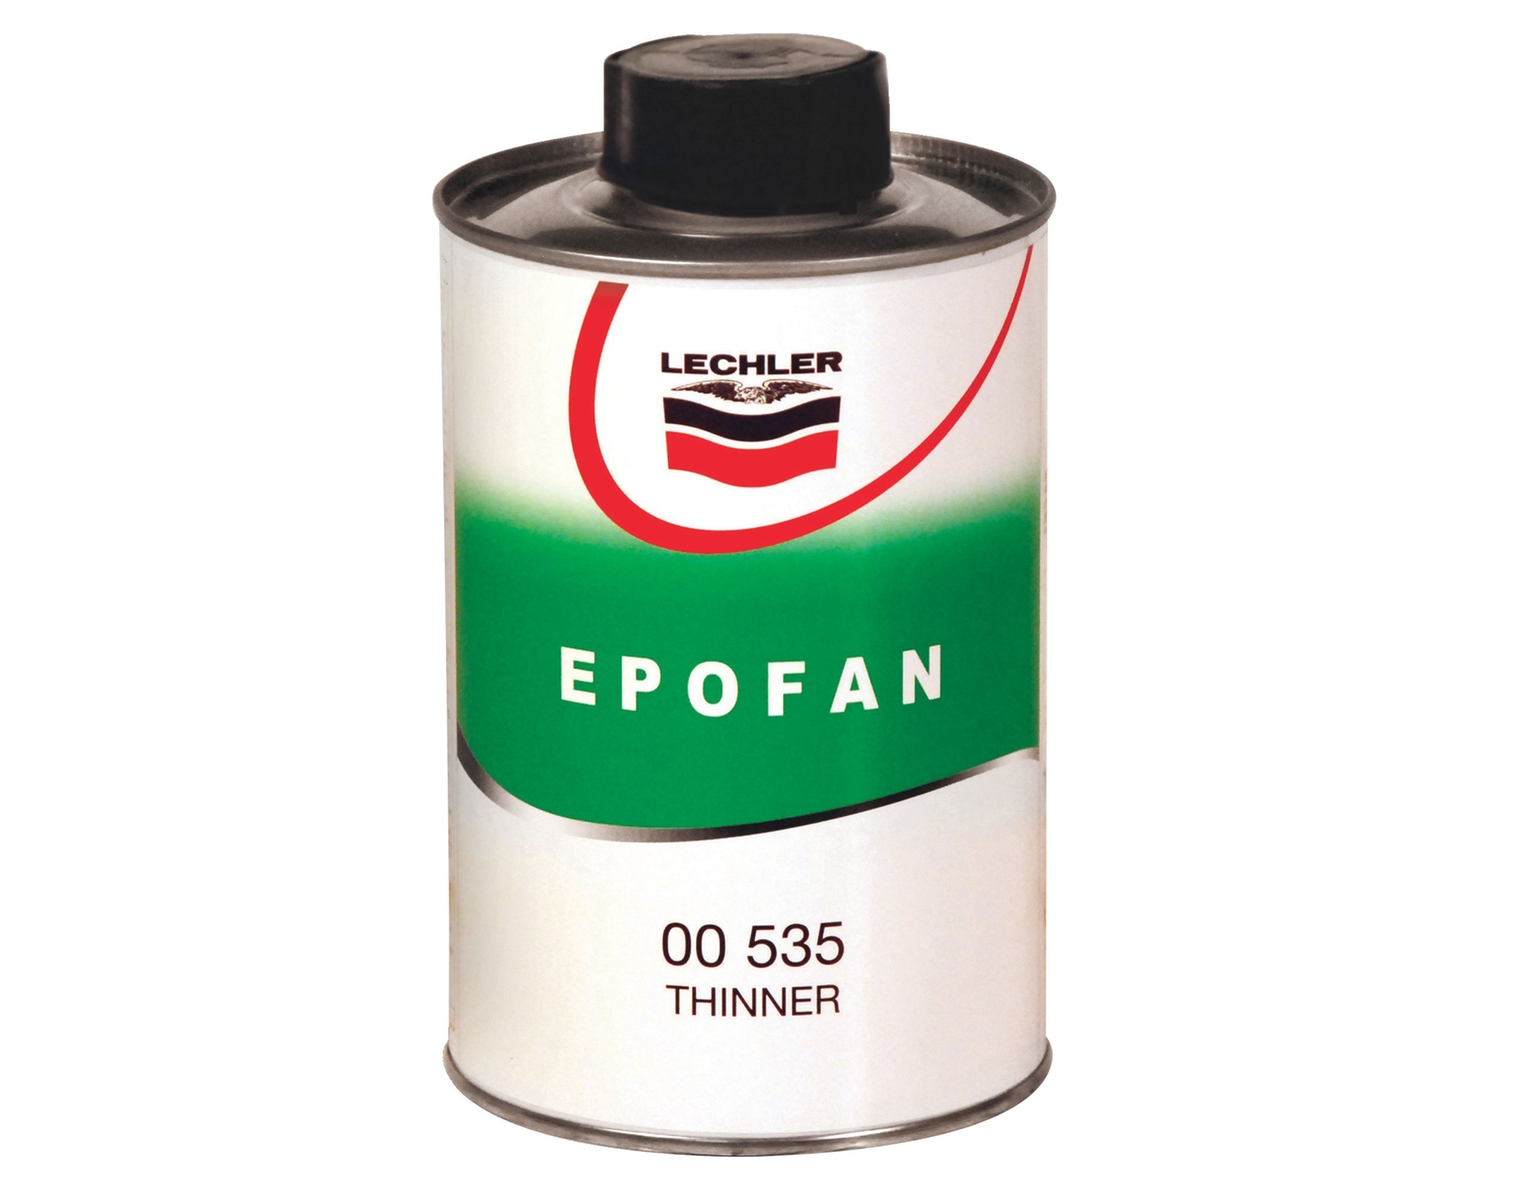 Lechler Verdünner Epofan, 00535, 1 Liter